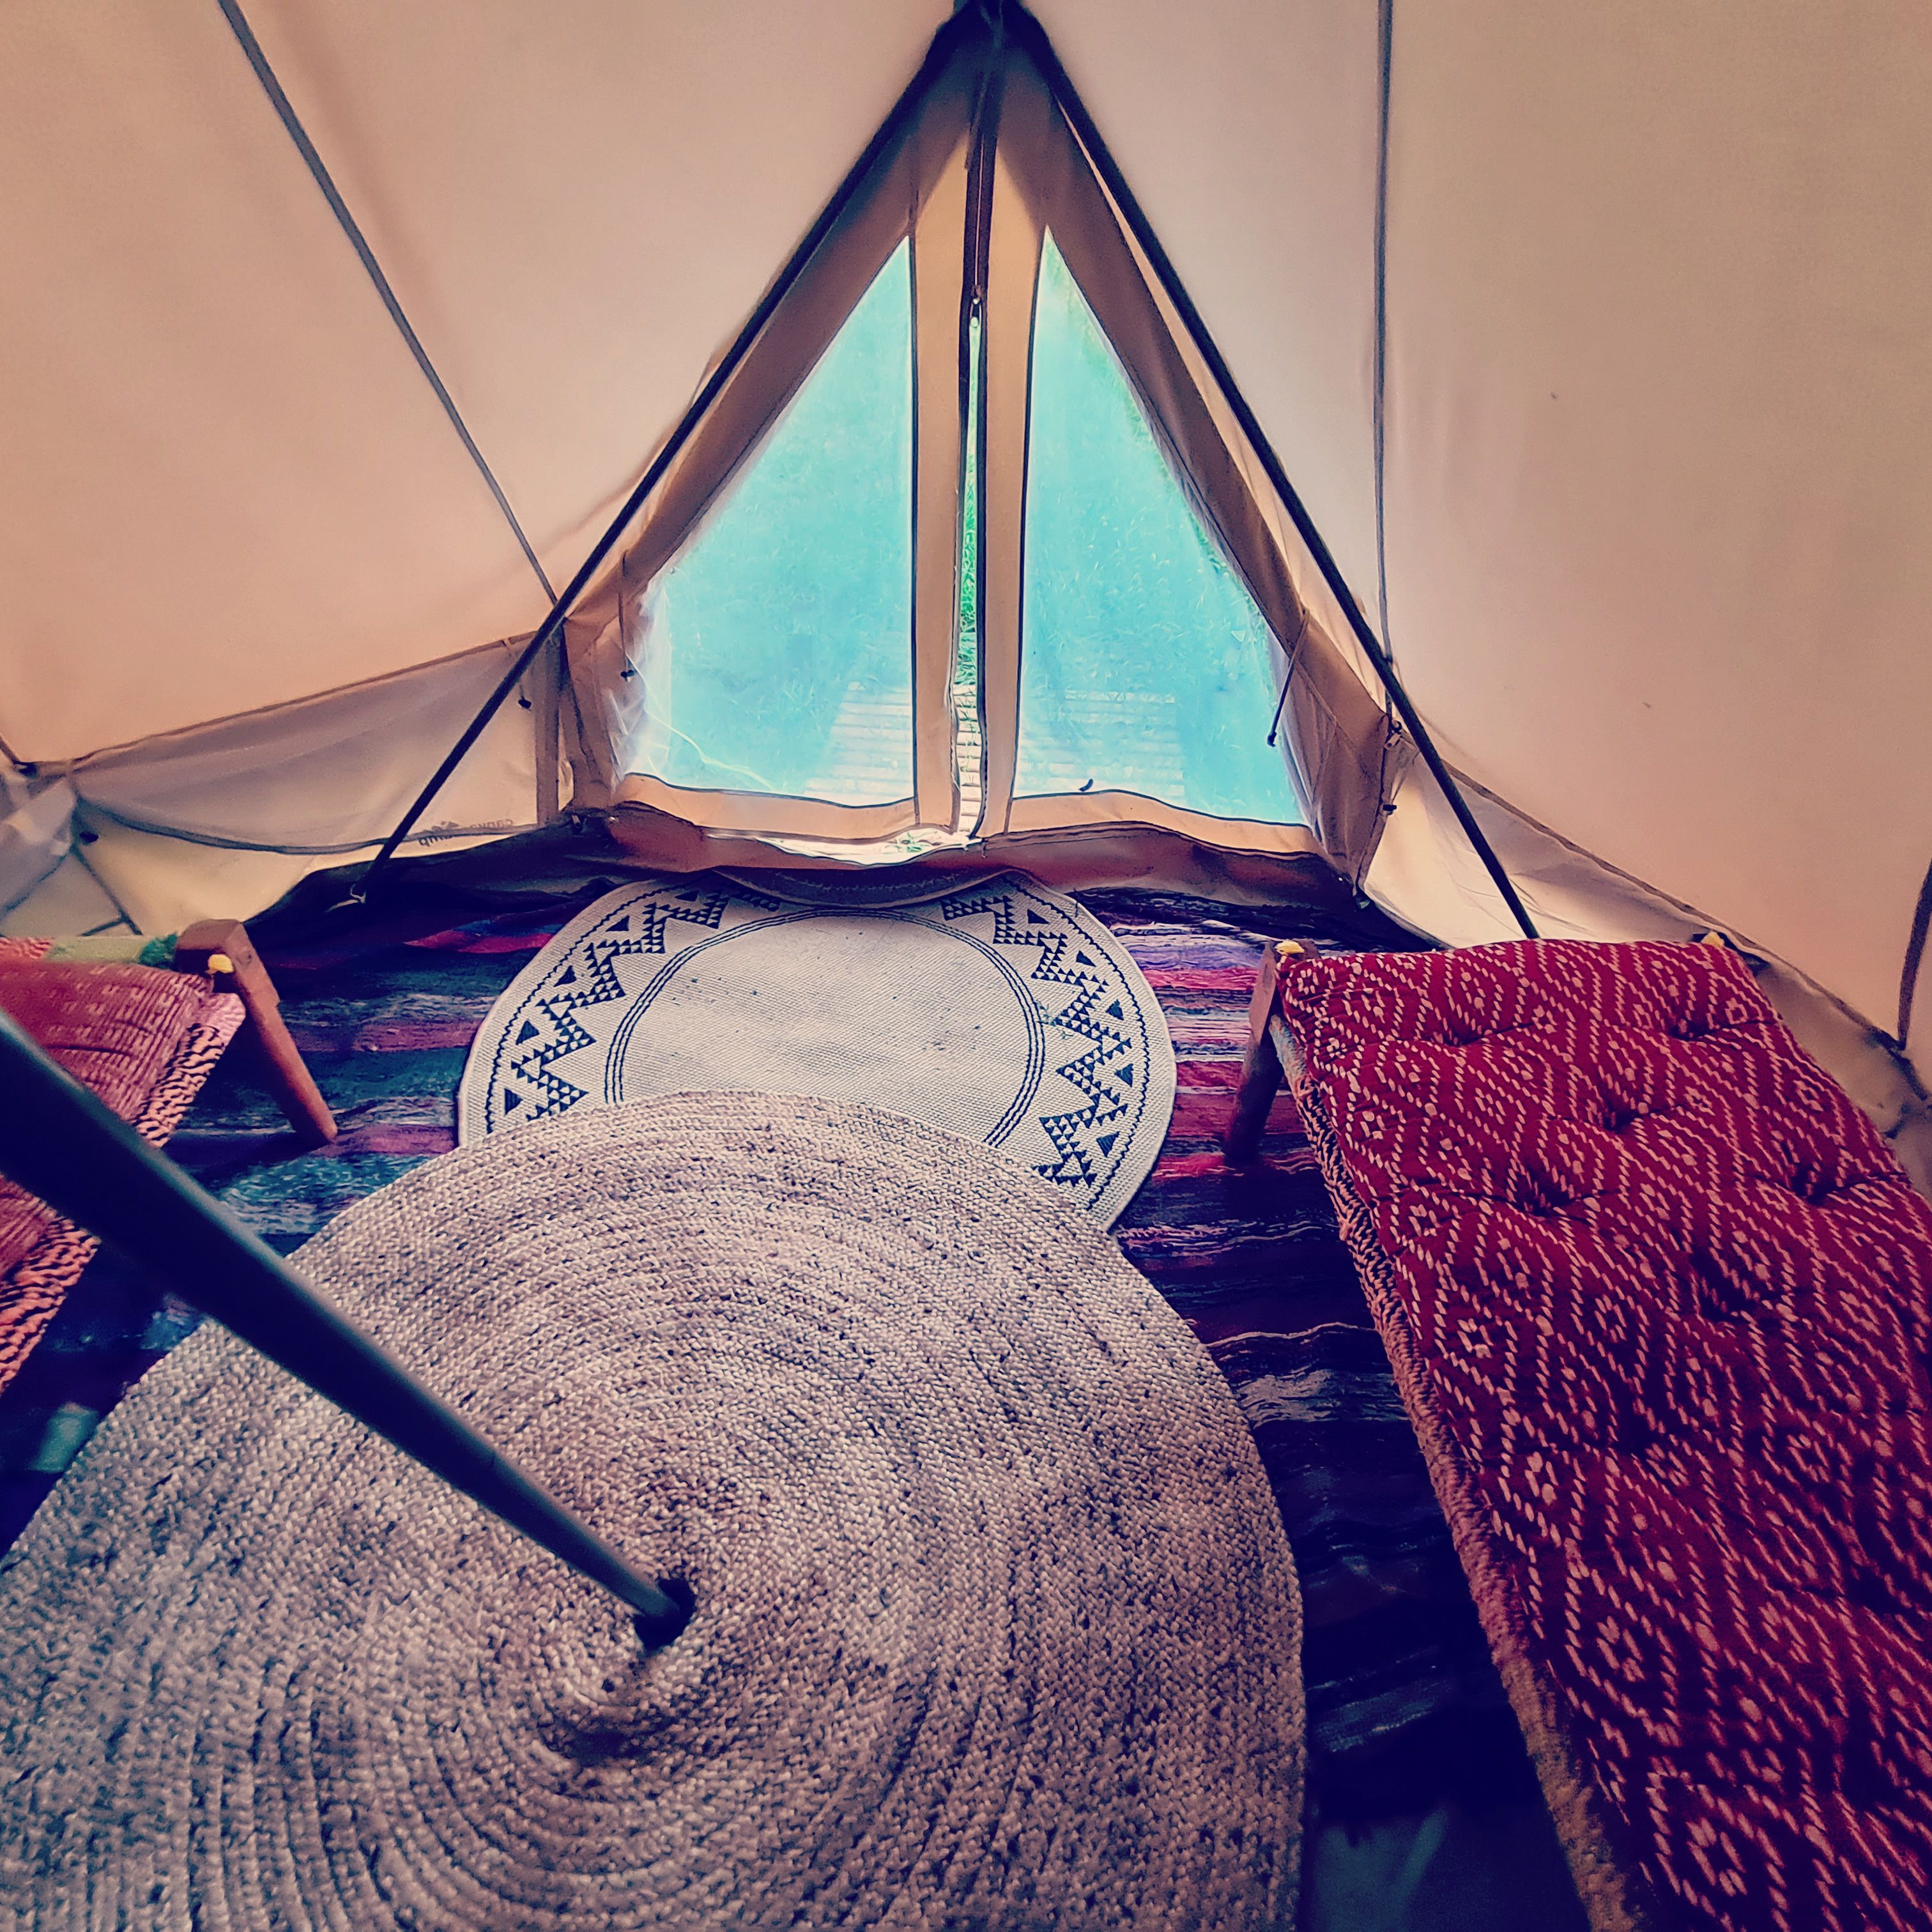 Les tentes Sibley, spacieuses et confortables, équipées de lits indiens en natte, appelés charpoy